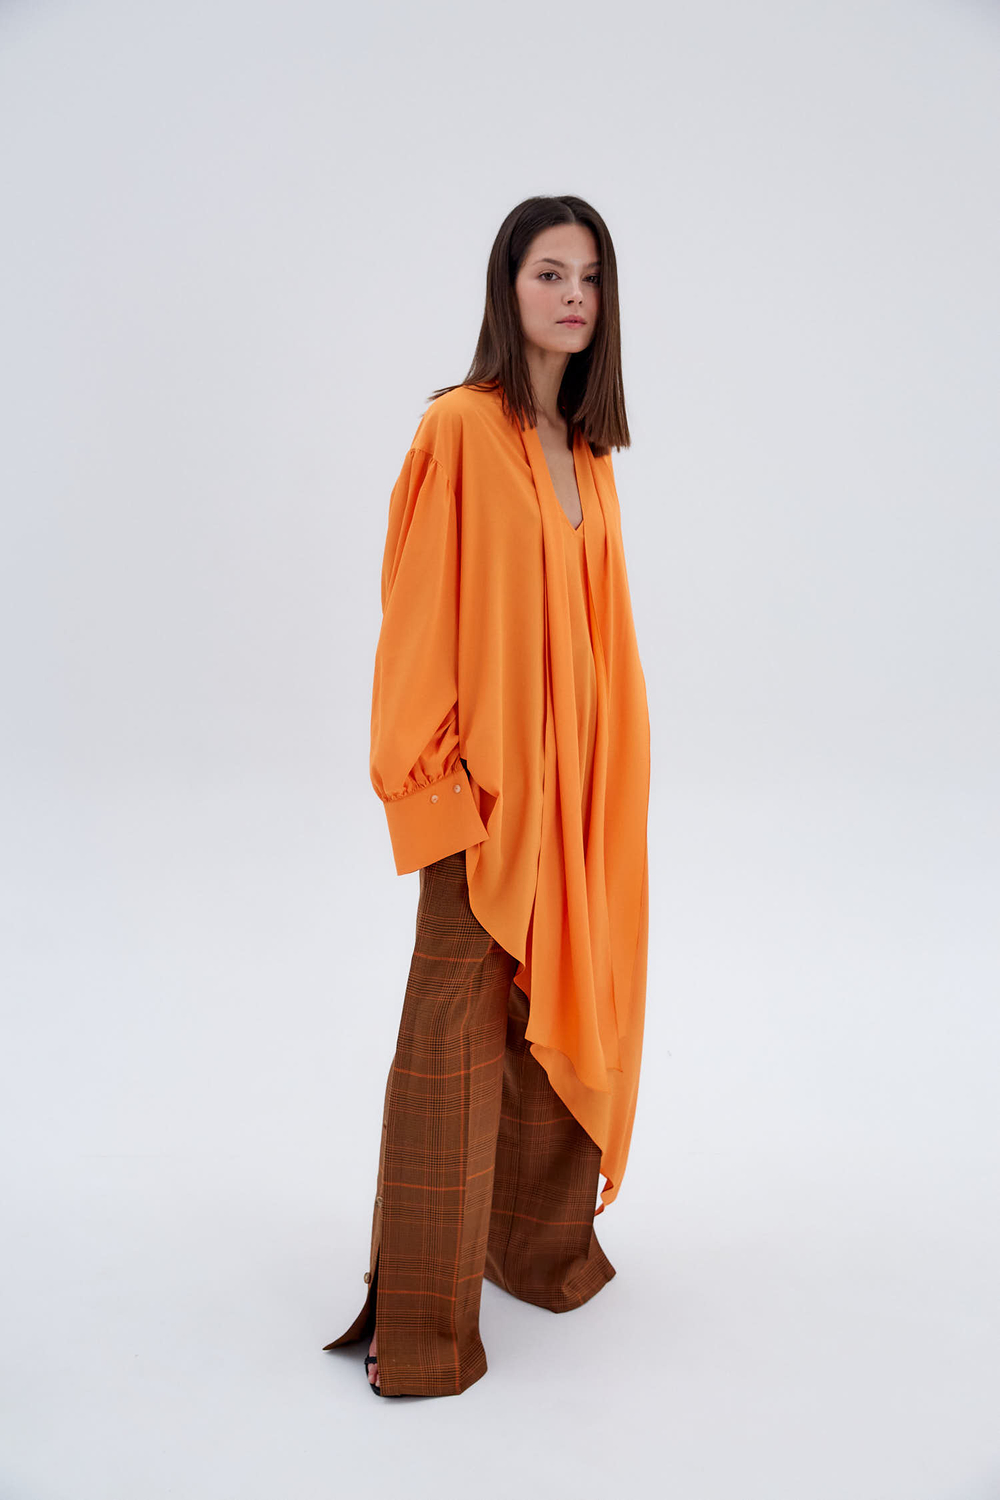 Блуза из шелка Стелла Маккартни с асимметричным низом оранж